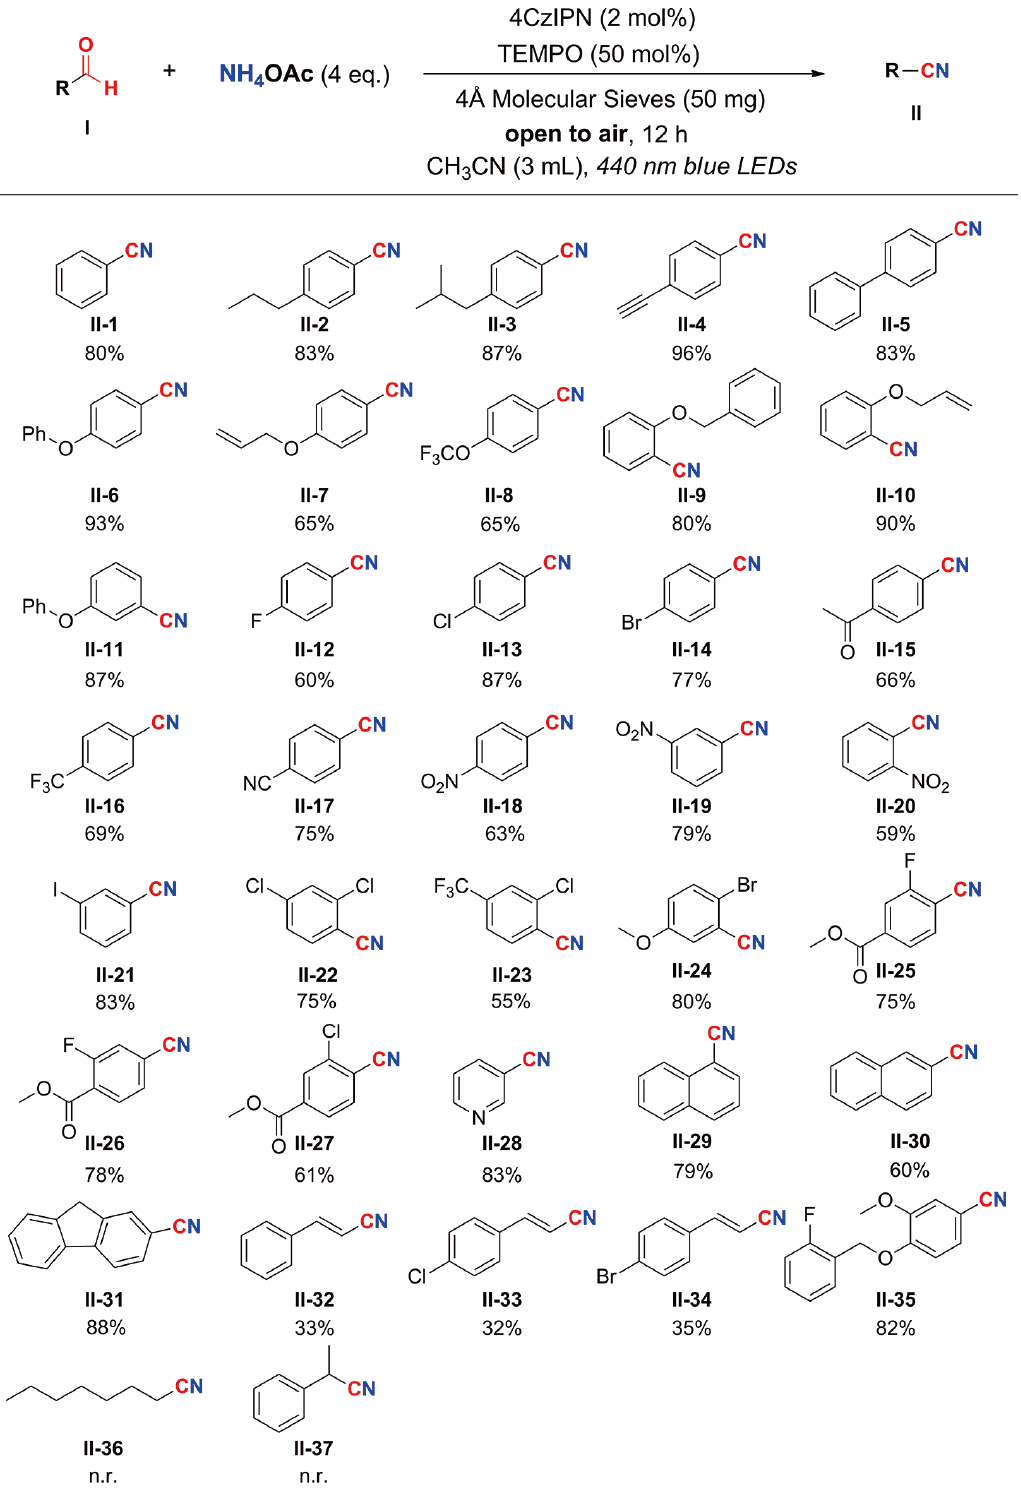 吴骊珠院士团队：无金属参与的可见光催化醛和铵盐合成腈类化合物